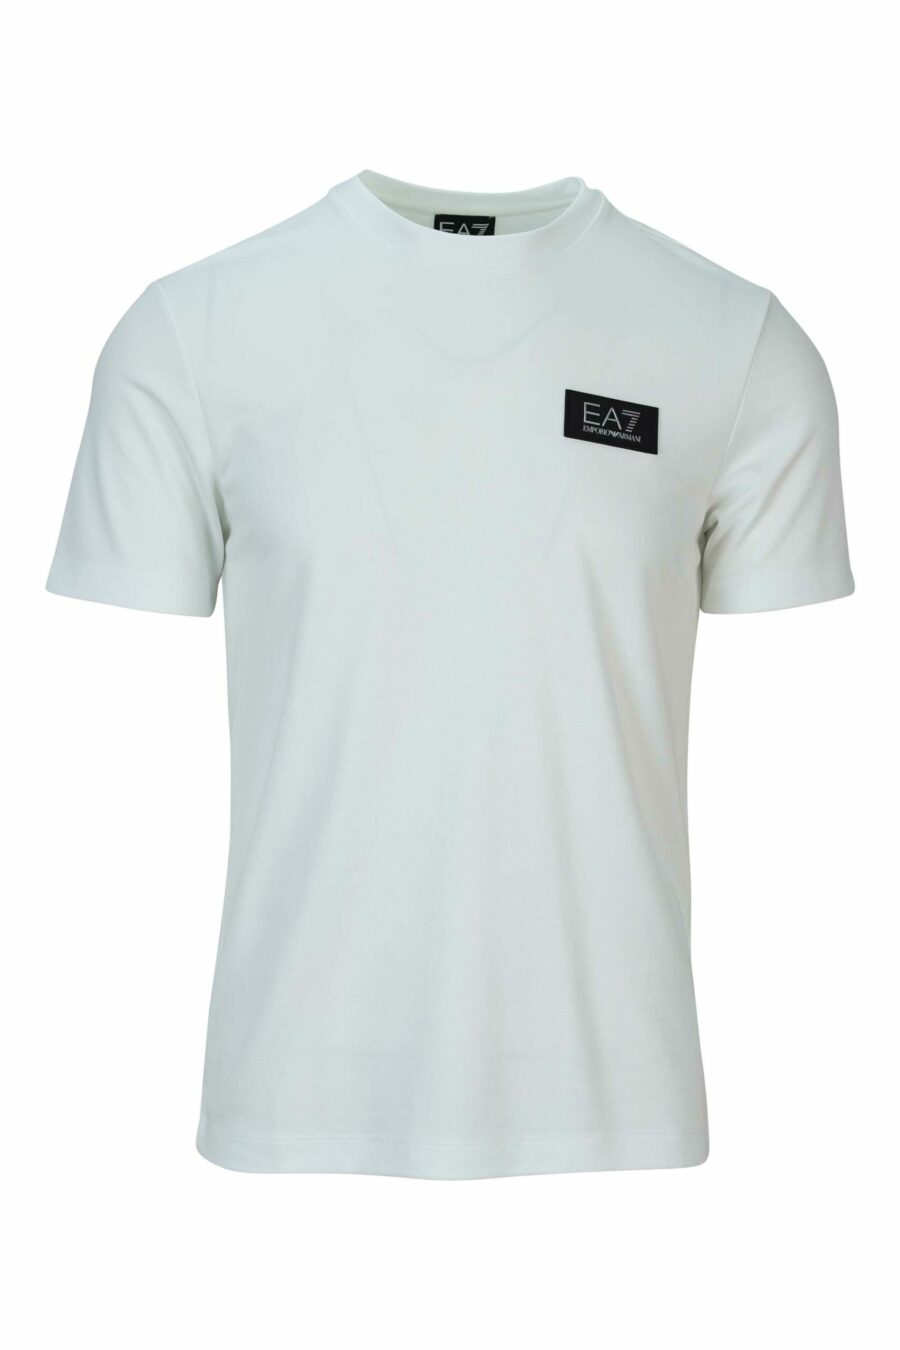 Weißes Oversize-T-Shirt mit weißem "lux identity"-Mini-Logo auf schwarzer Platte - 8058947508495 skaliert